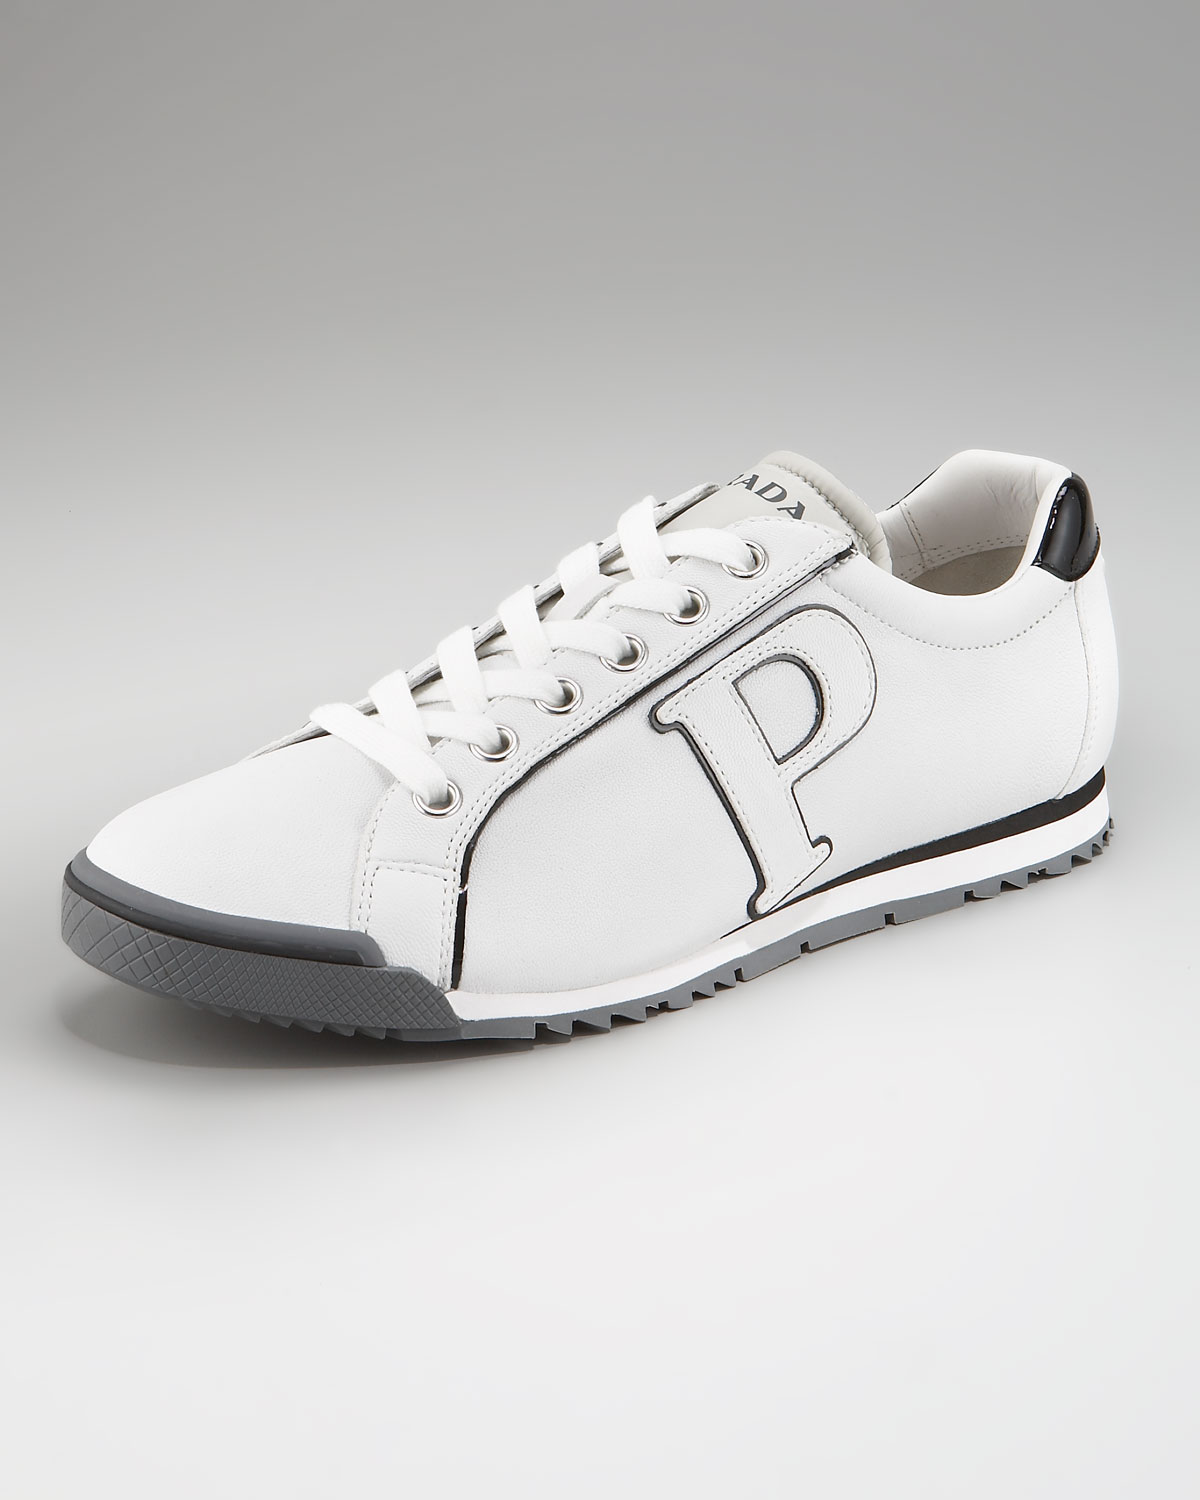 Prada P Logo Sneaker in White for Men - Lyst